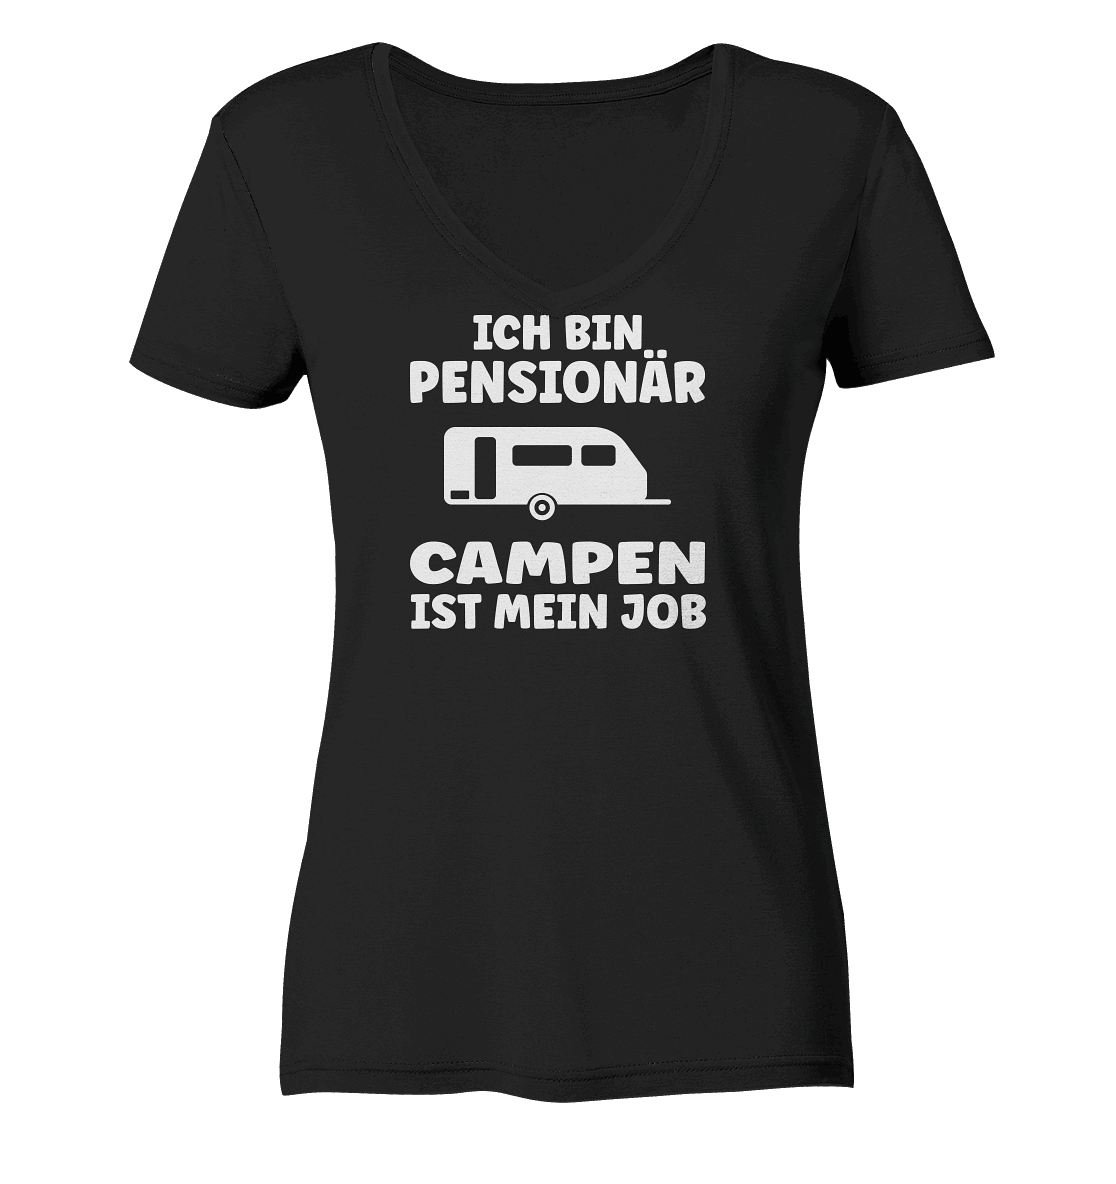 Ich bin Pensionär - Campen ist mein Job - Ladies Organic V-Neck Shirt